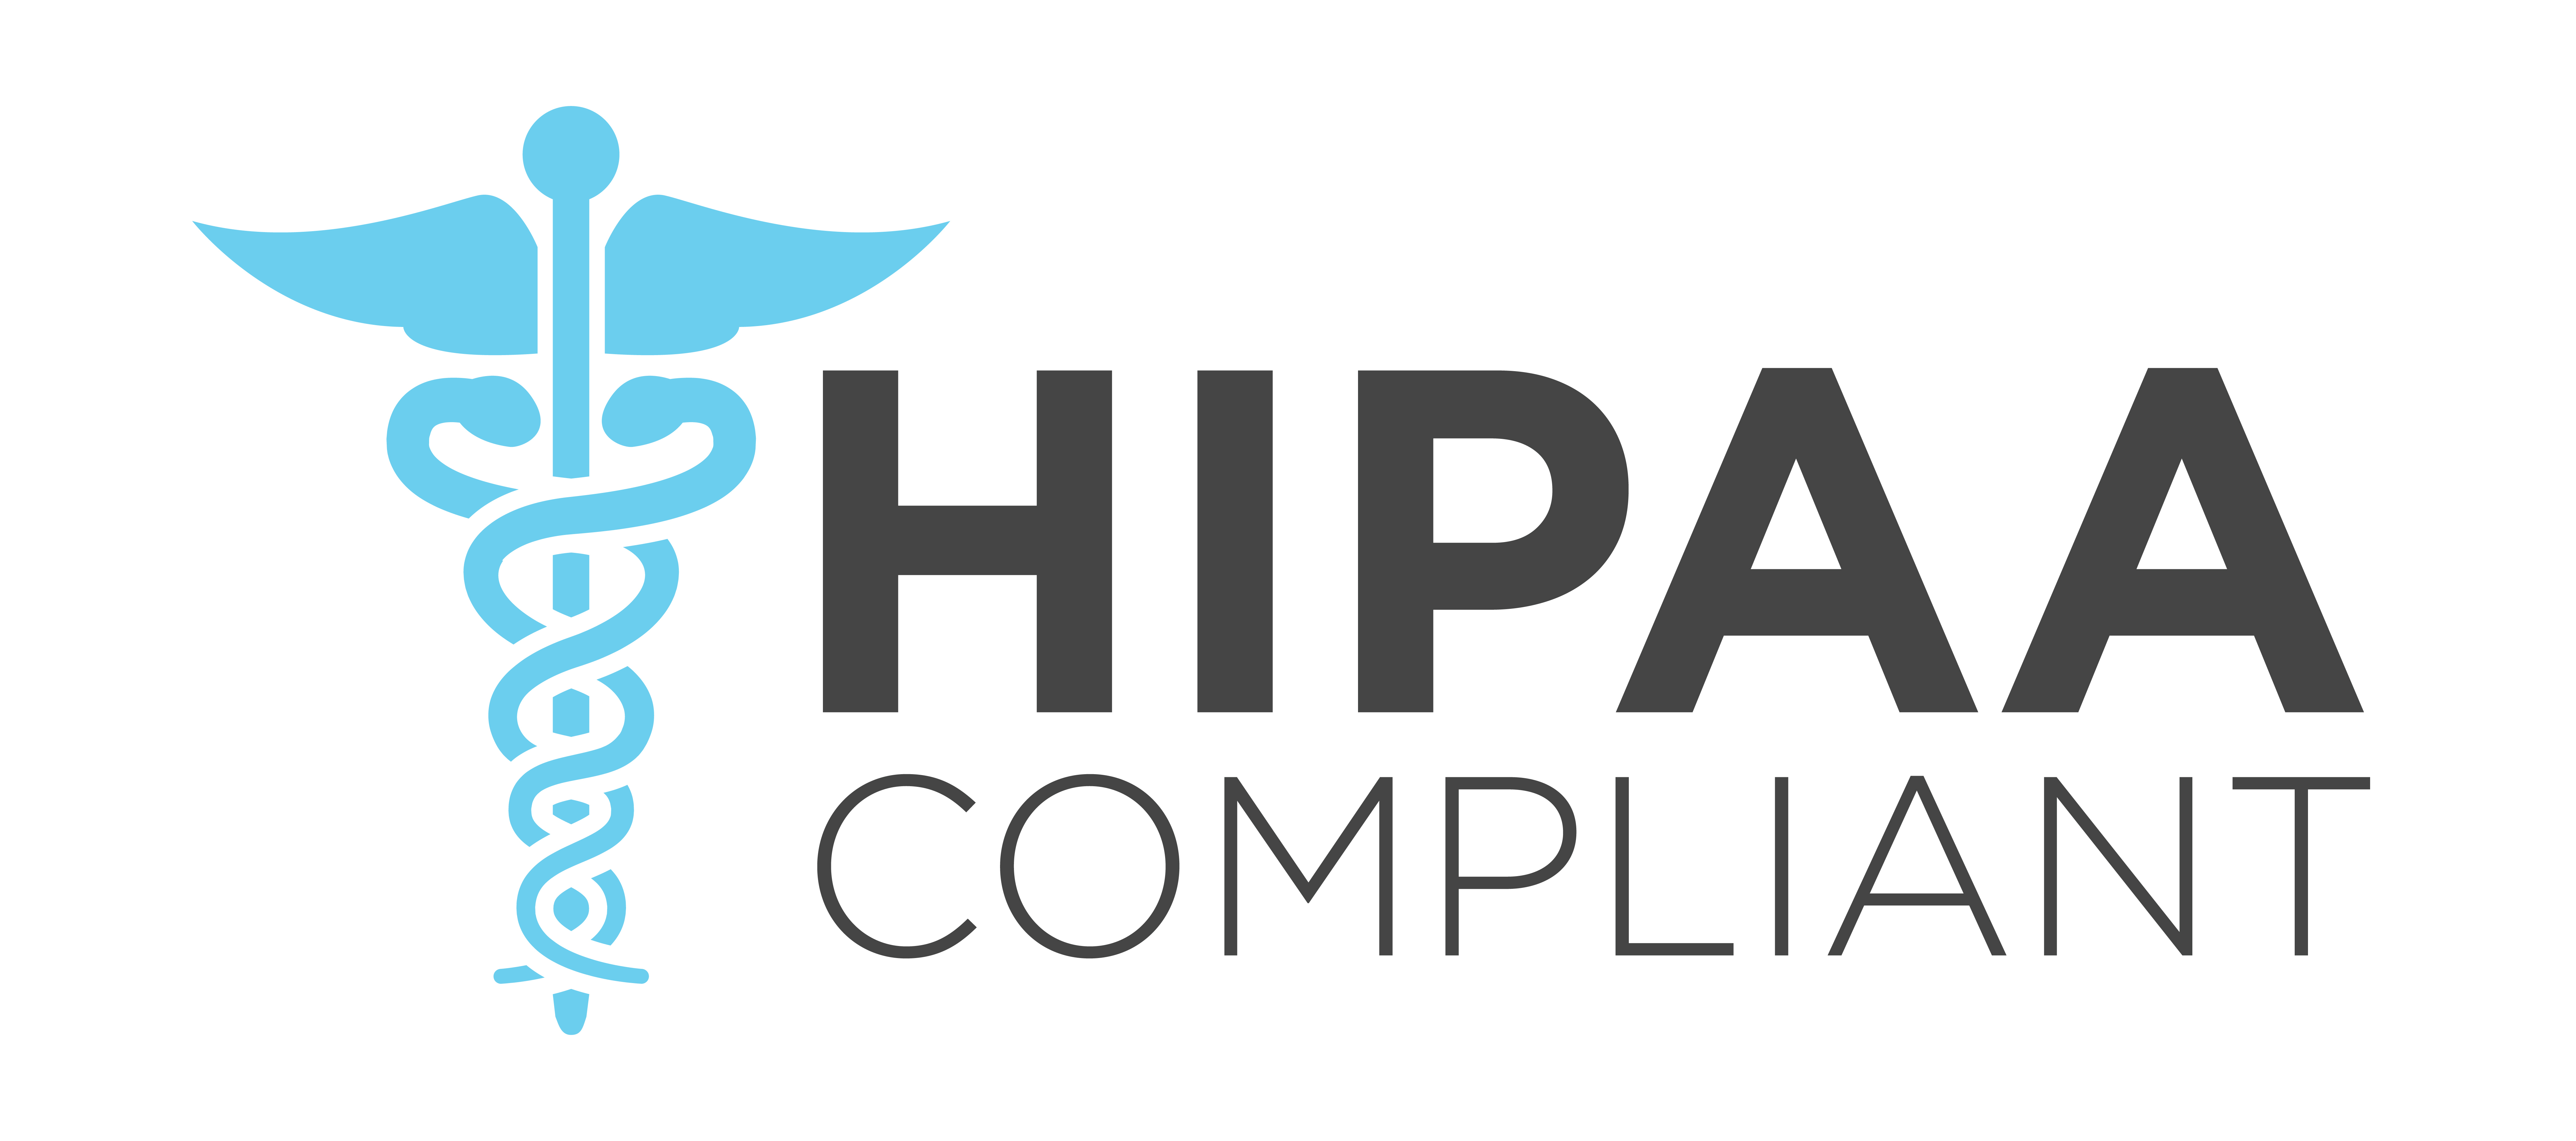 HIPAA solution provider. 2FA.